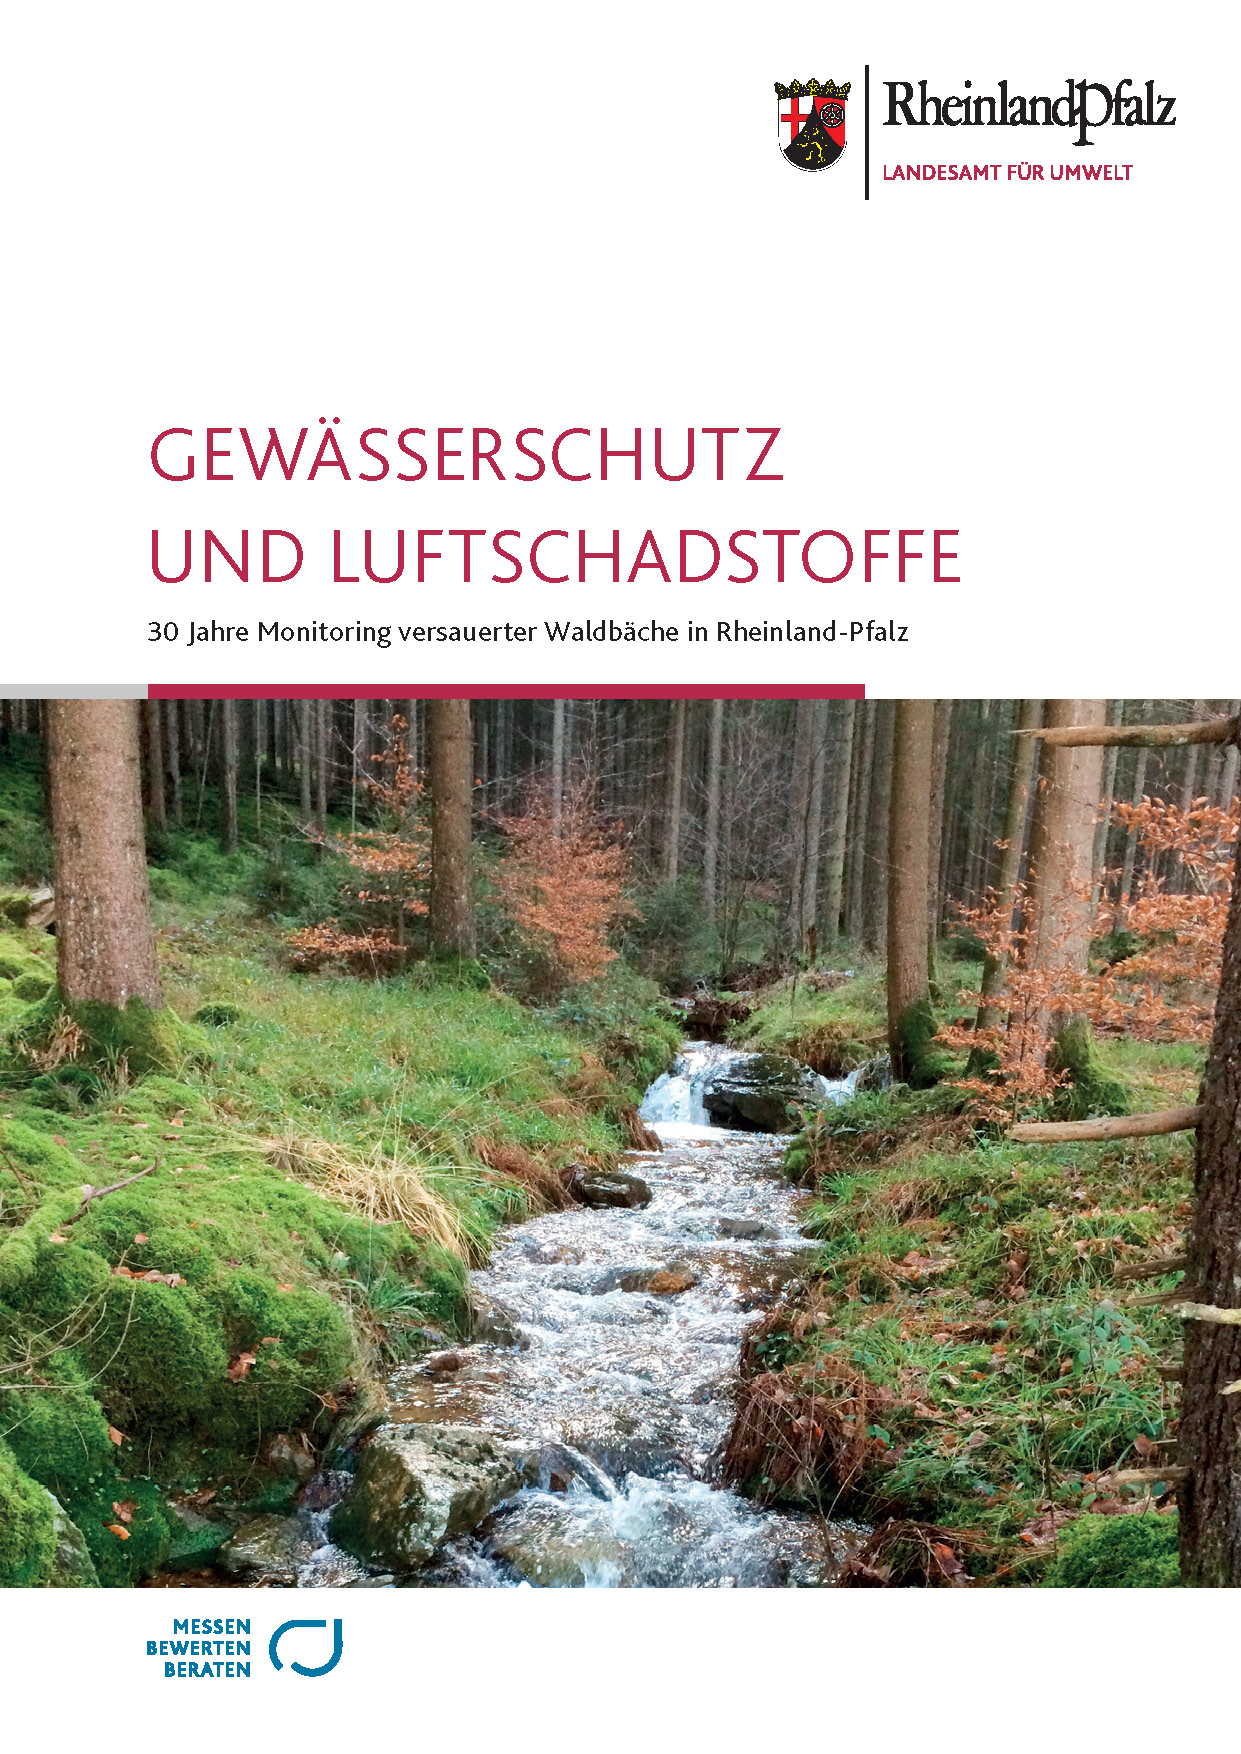 Titelseite und Link zum Bericht"Gewässerschutz und Luftschadstoffe - 30 Jahre Monitoring versauerter Waldbäche in Rheinland-Pfalz"